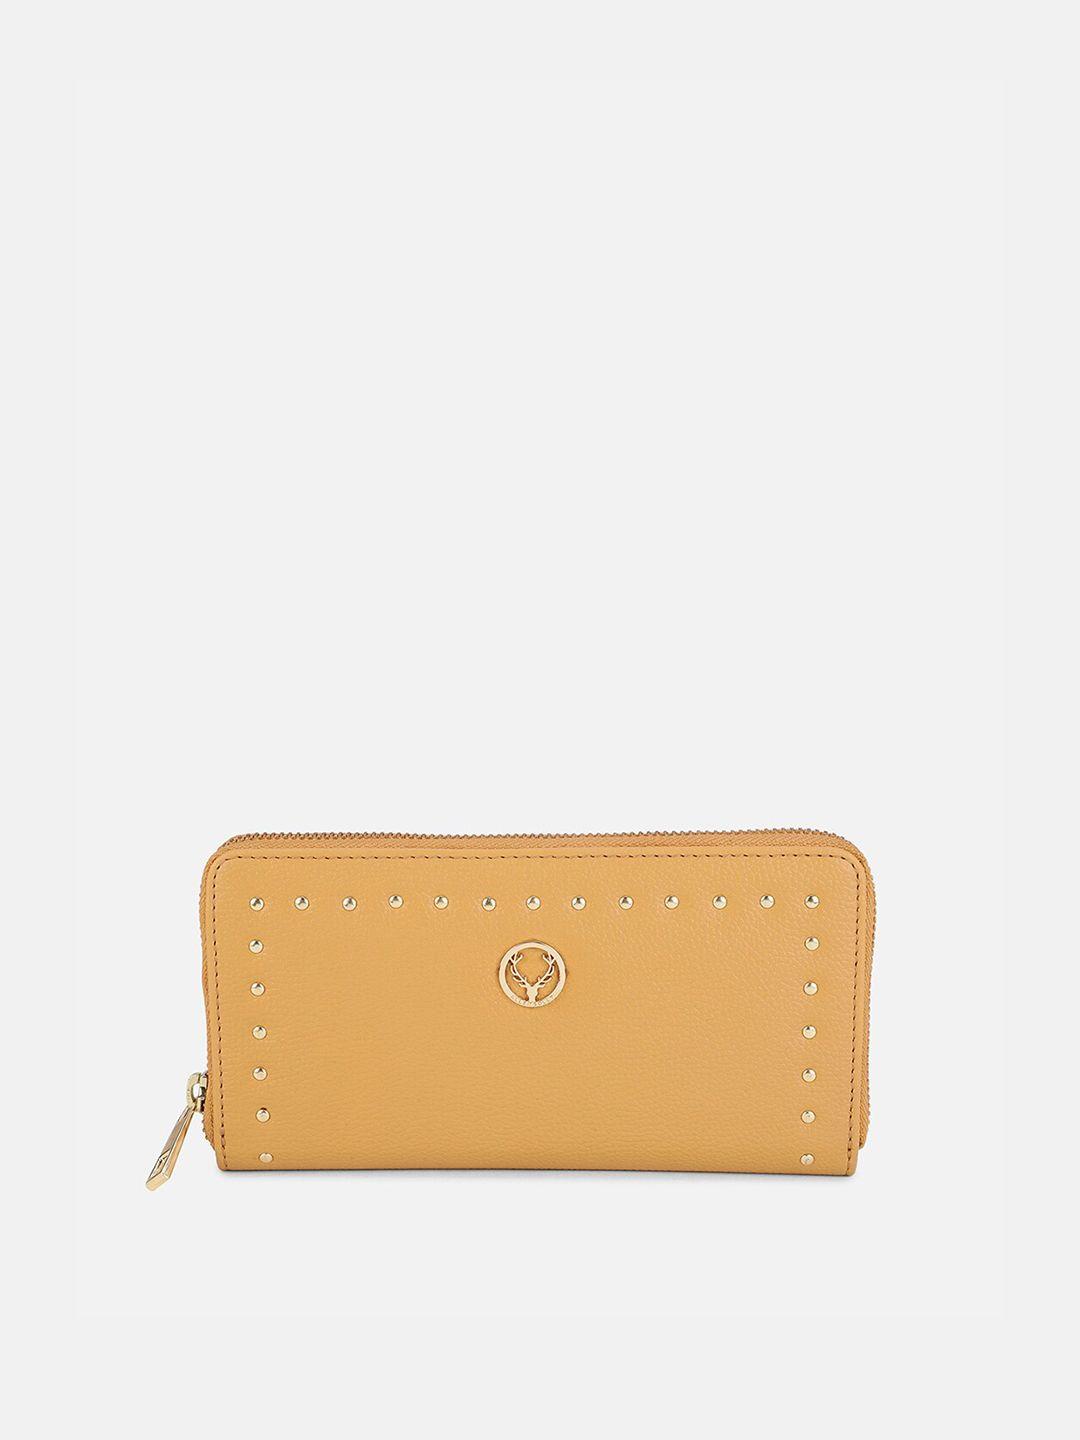 allen solly women yellow embellished zip around wallet